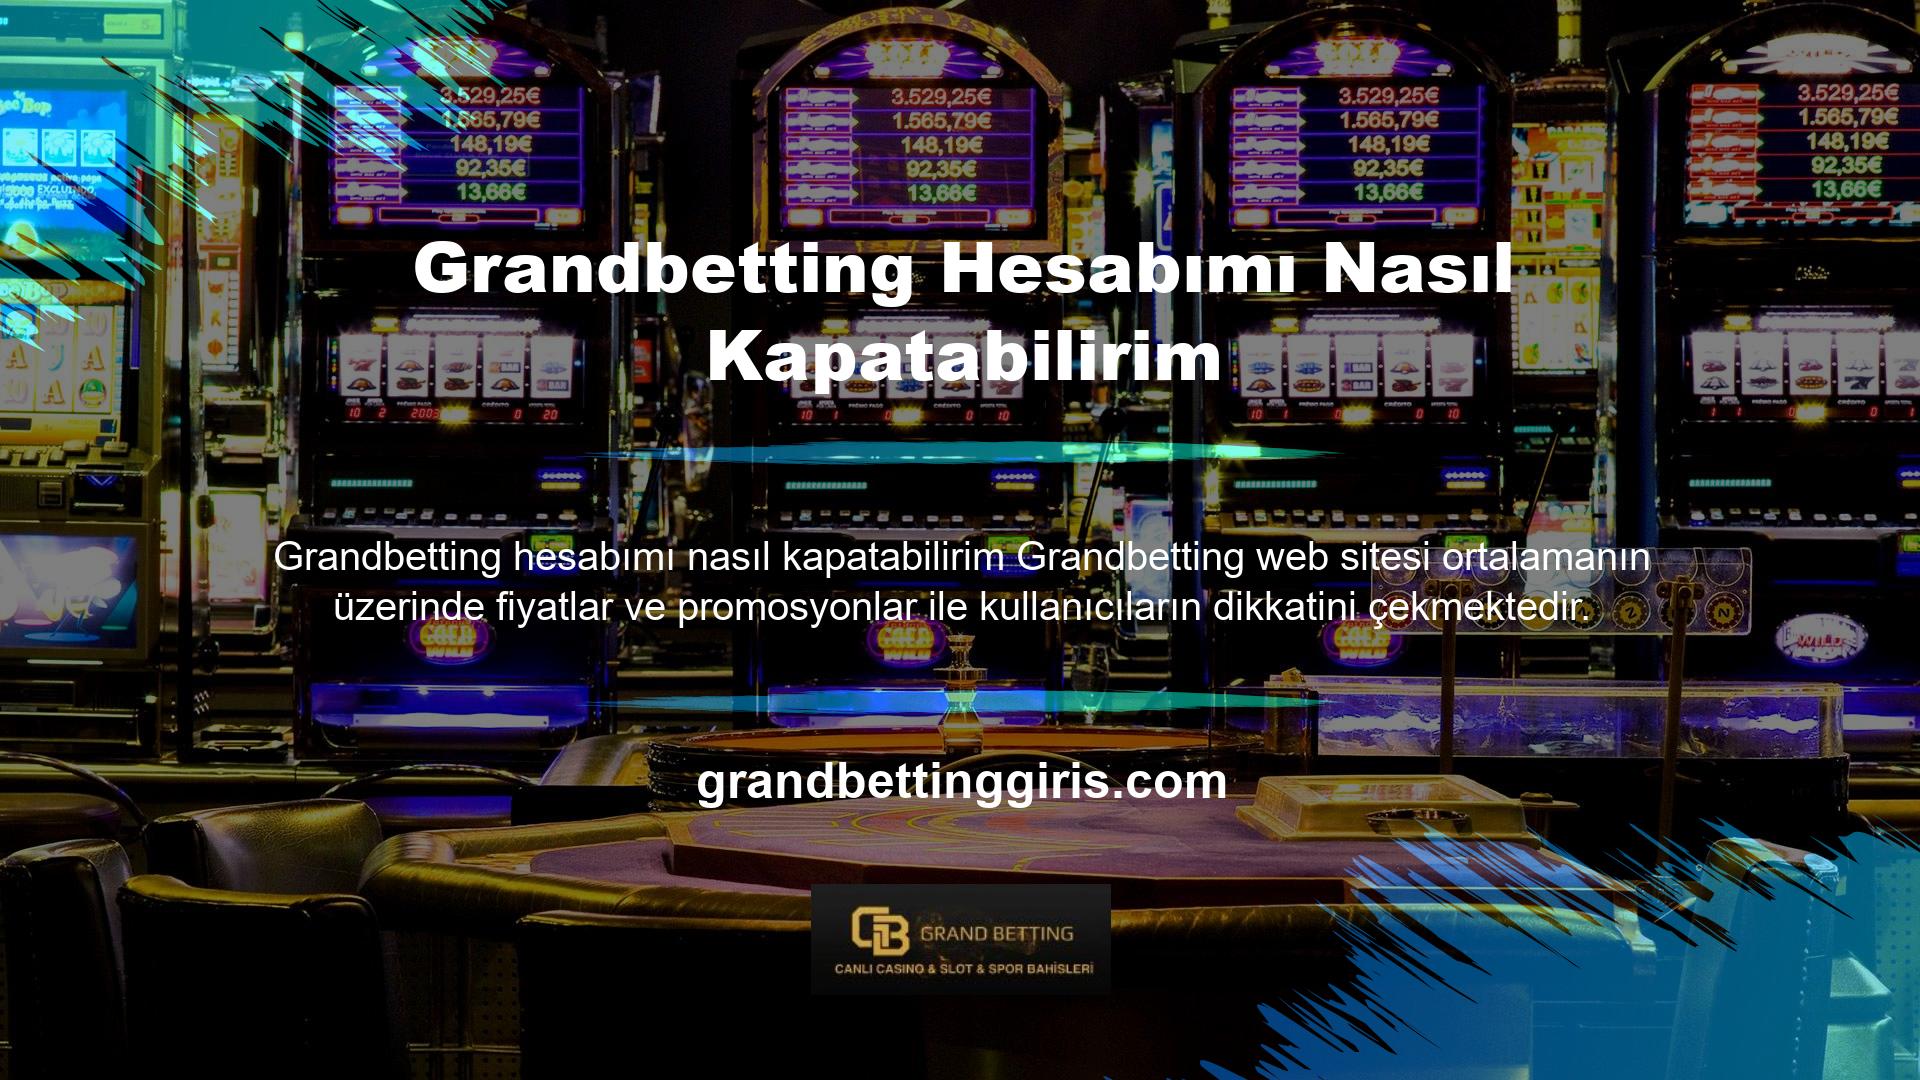 Site, bahisçilerden casino oyuncularına, poker oyuncularına kadar geniş bir kitleye özel promosyonlar sunmaktadır